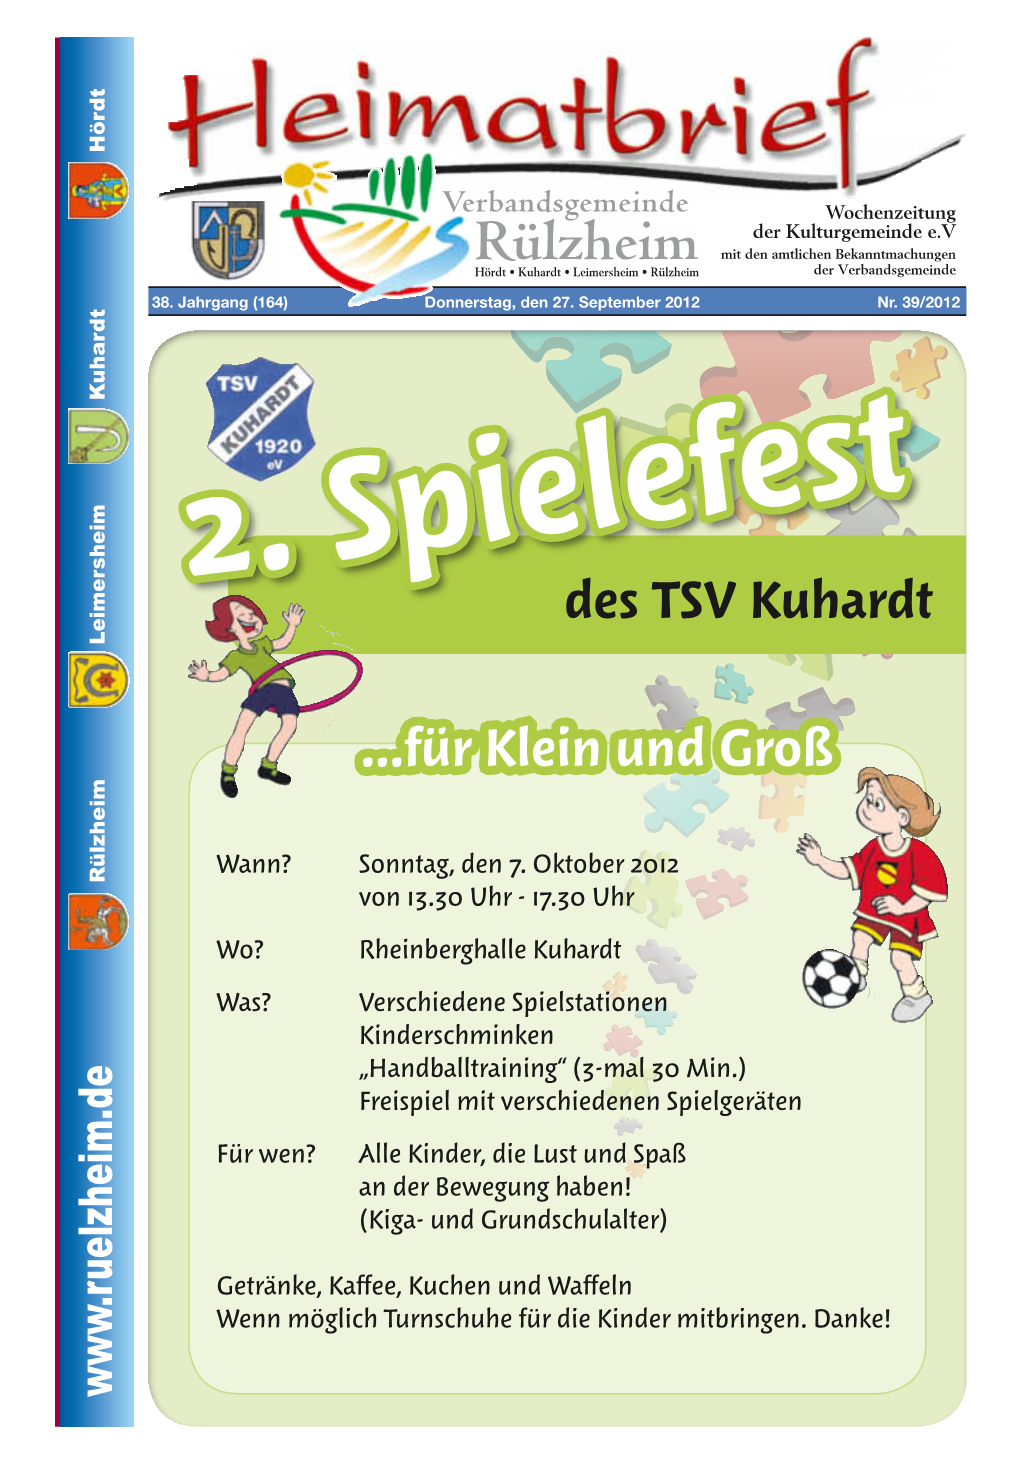 Des TSV Kuhardt